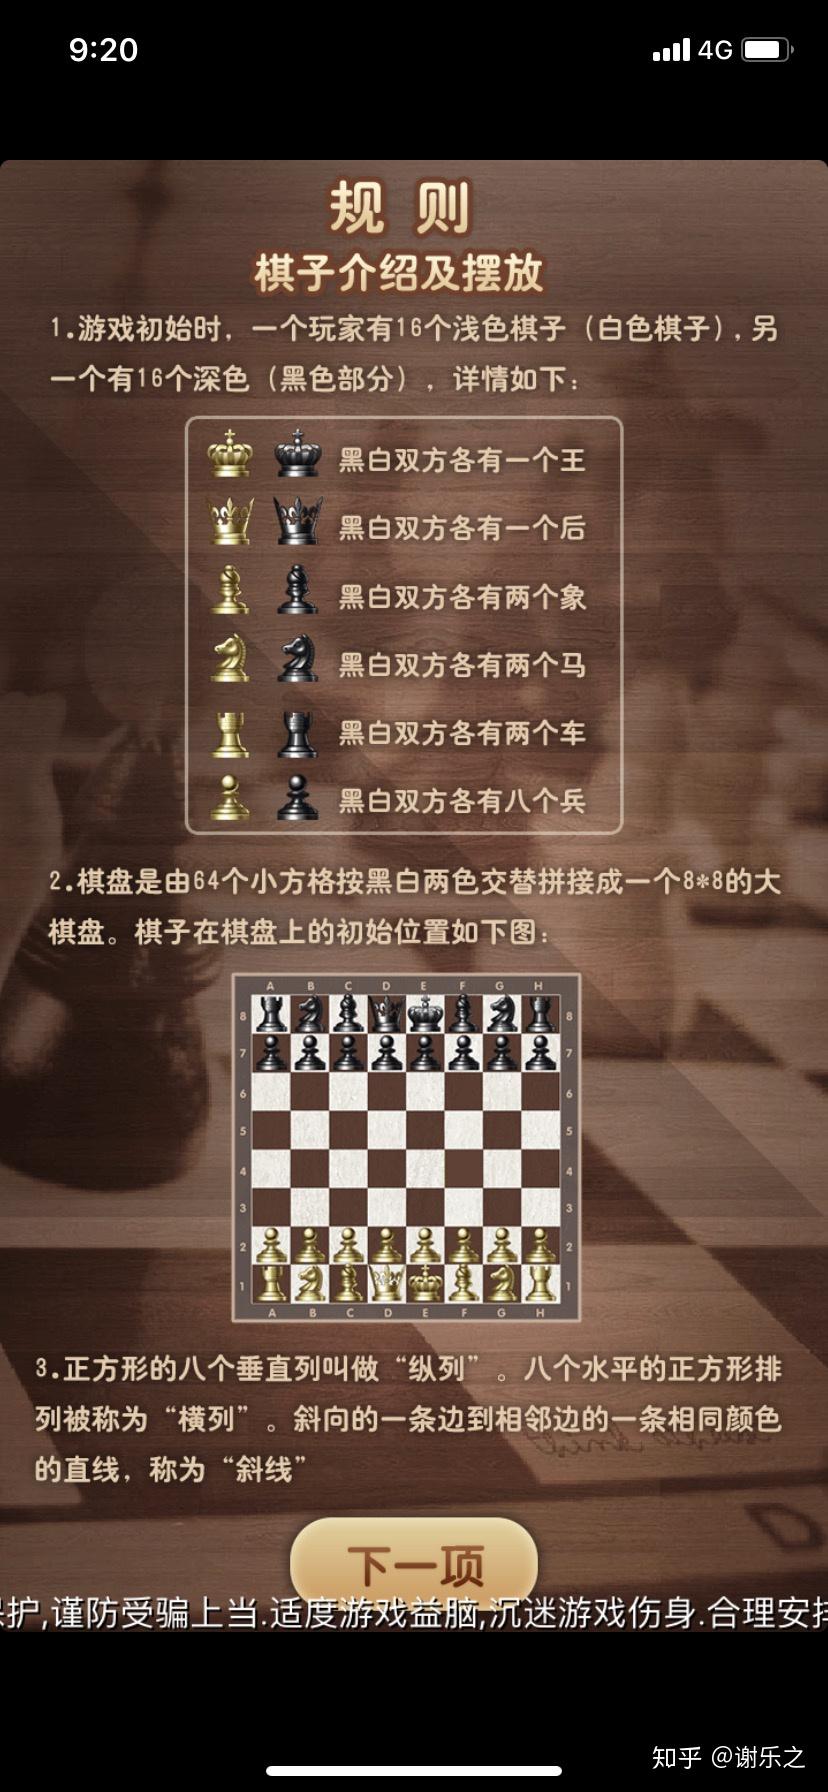 谁能介绍一下国际象棋的基本规则和走法还有基本战术